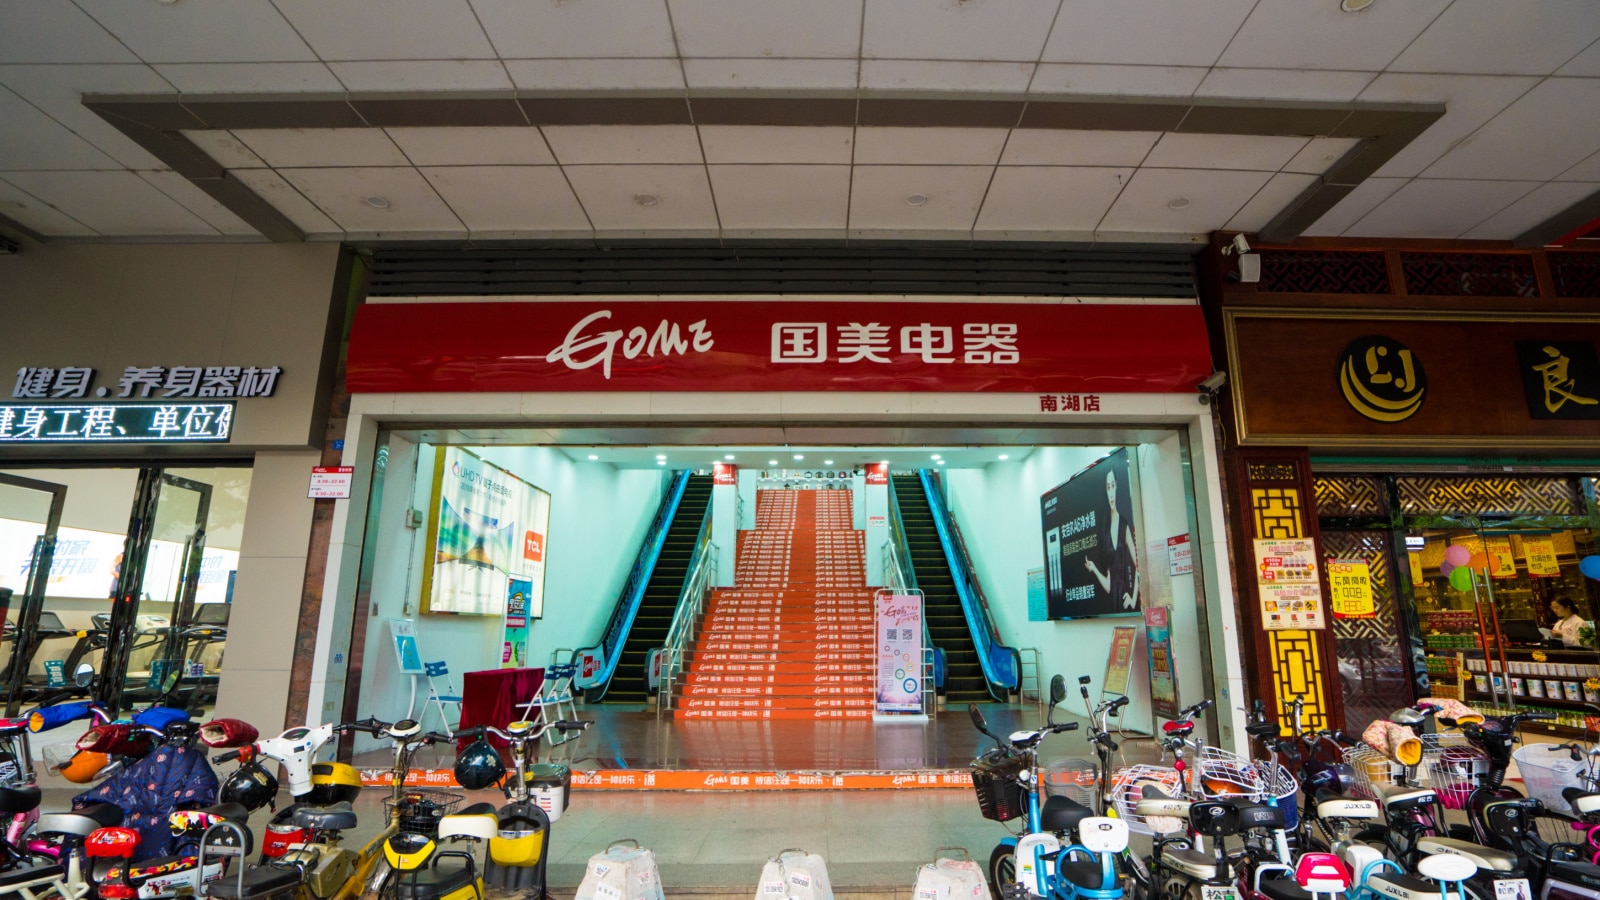 Huizhou, China - November 2016: A store "Nanhu" Branch of Gome Electrical Appliances in Huizhou city